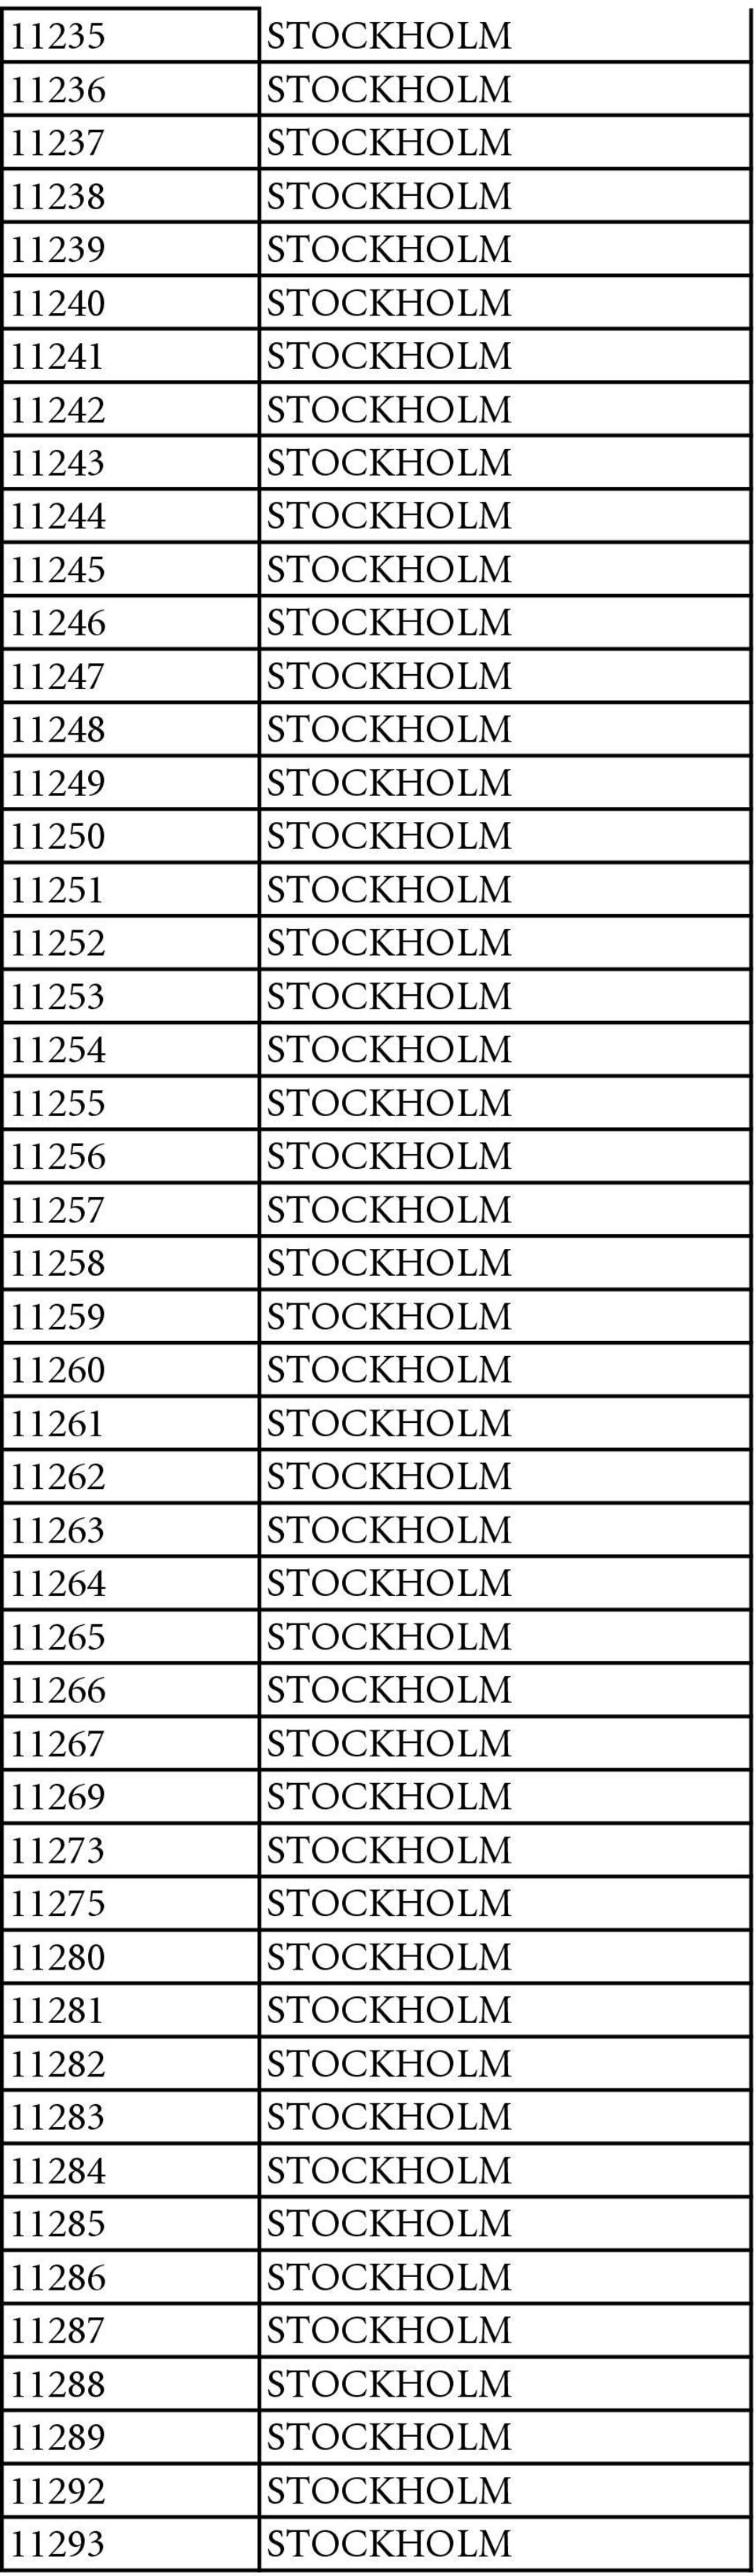 11259 STOCKHOLM 11260 STOCKHOLM 11261 STOCKHOLM 11262 STOCKHOLM 11263 STOCKHOLM 11264 STOCKHOLM 11265 STOCKHOLM 11266 STOCKHOLM 11267 STOCKHOLM 11269 STOCKHOLM 11273 STOCKHOLM 11275 STOCKHOLM